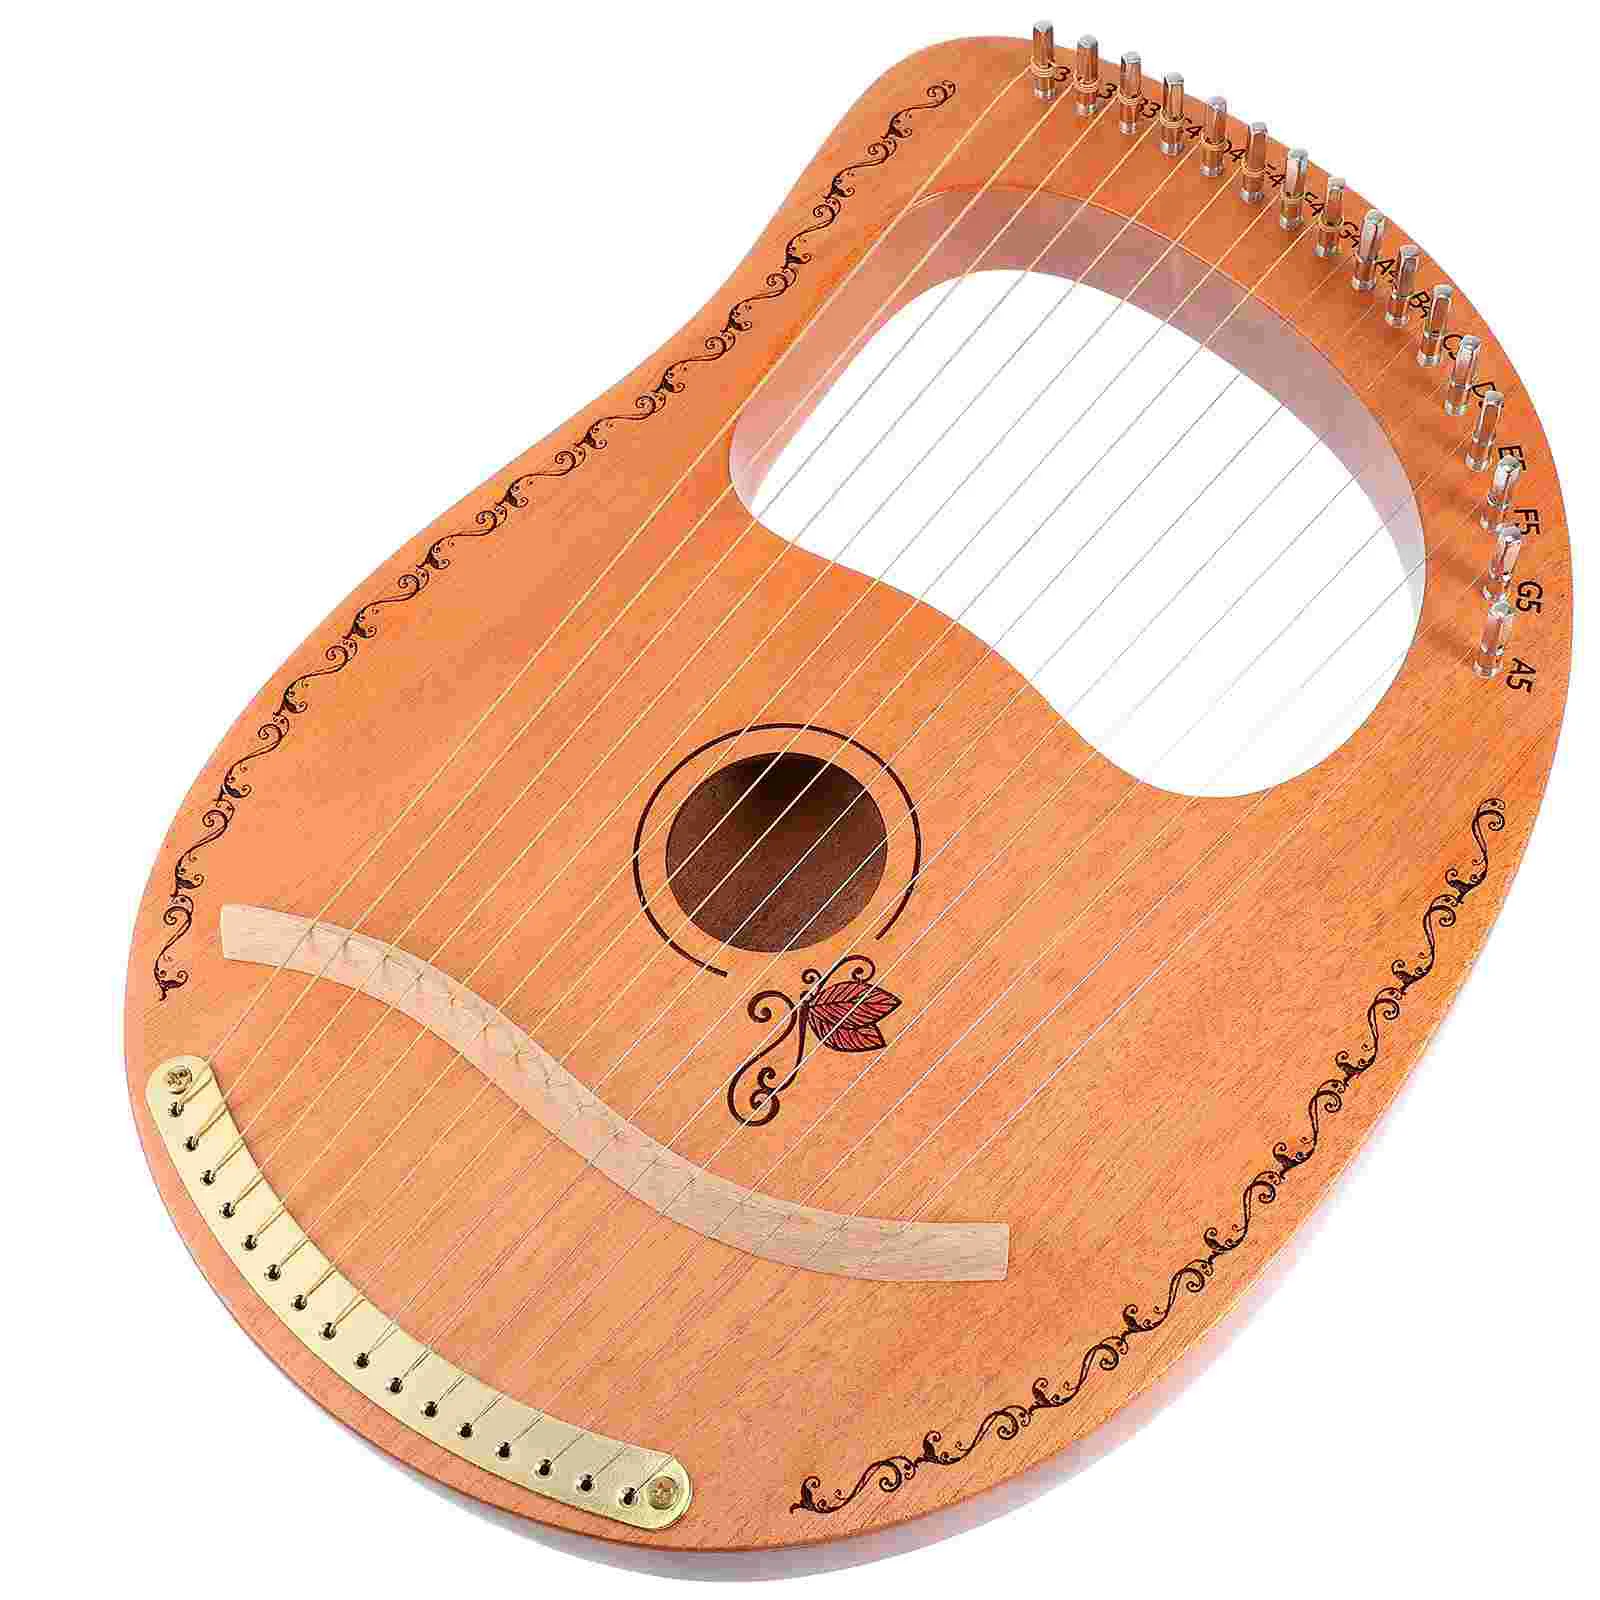 

16 струн Lyre Harp инструмент нежный подарок музыкальные практичные инструменты деревянные